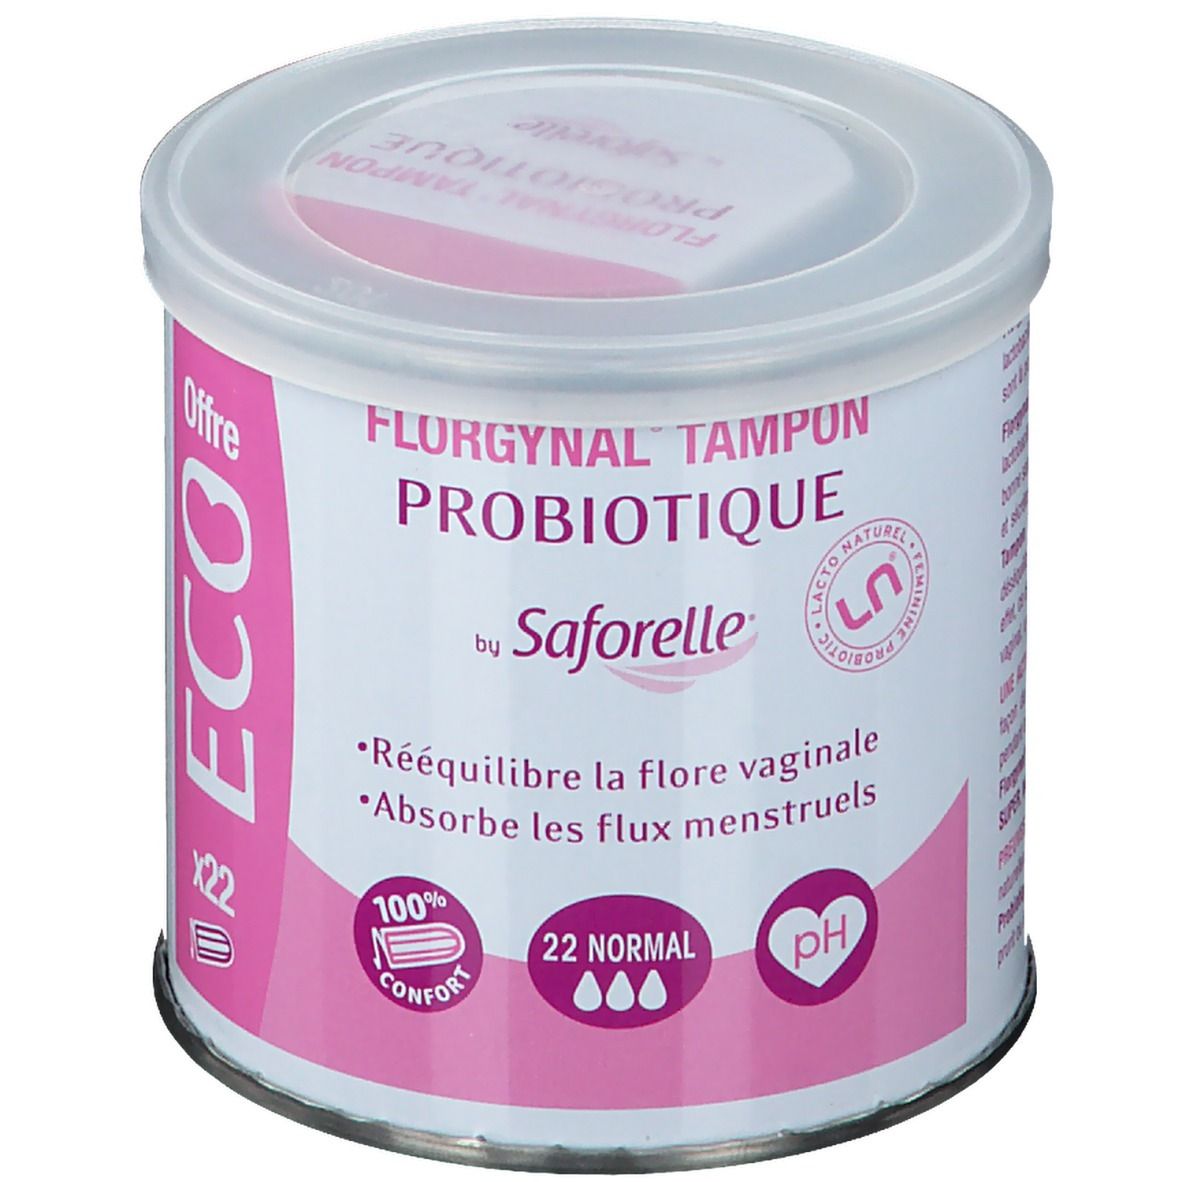 Saforelle® Florgynal Tampon Probiotique ECO 22 Normal